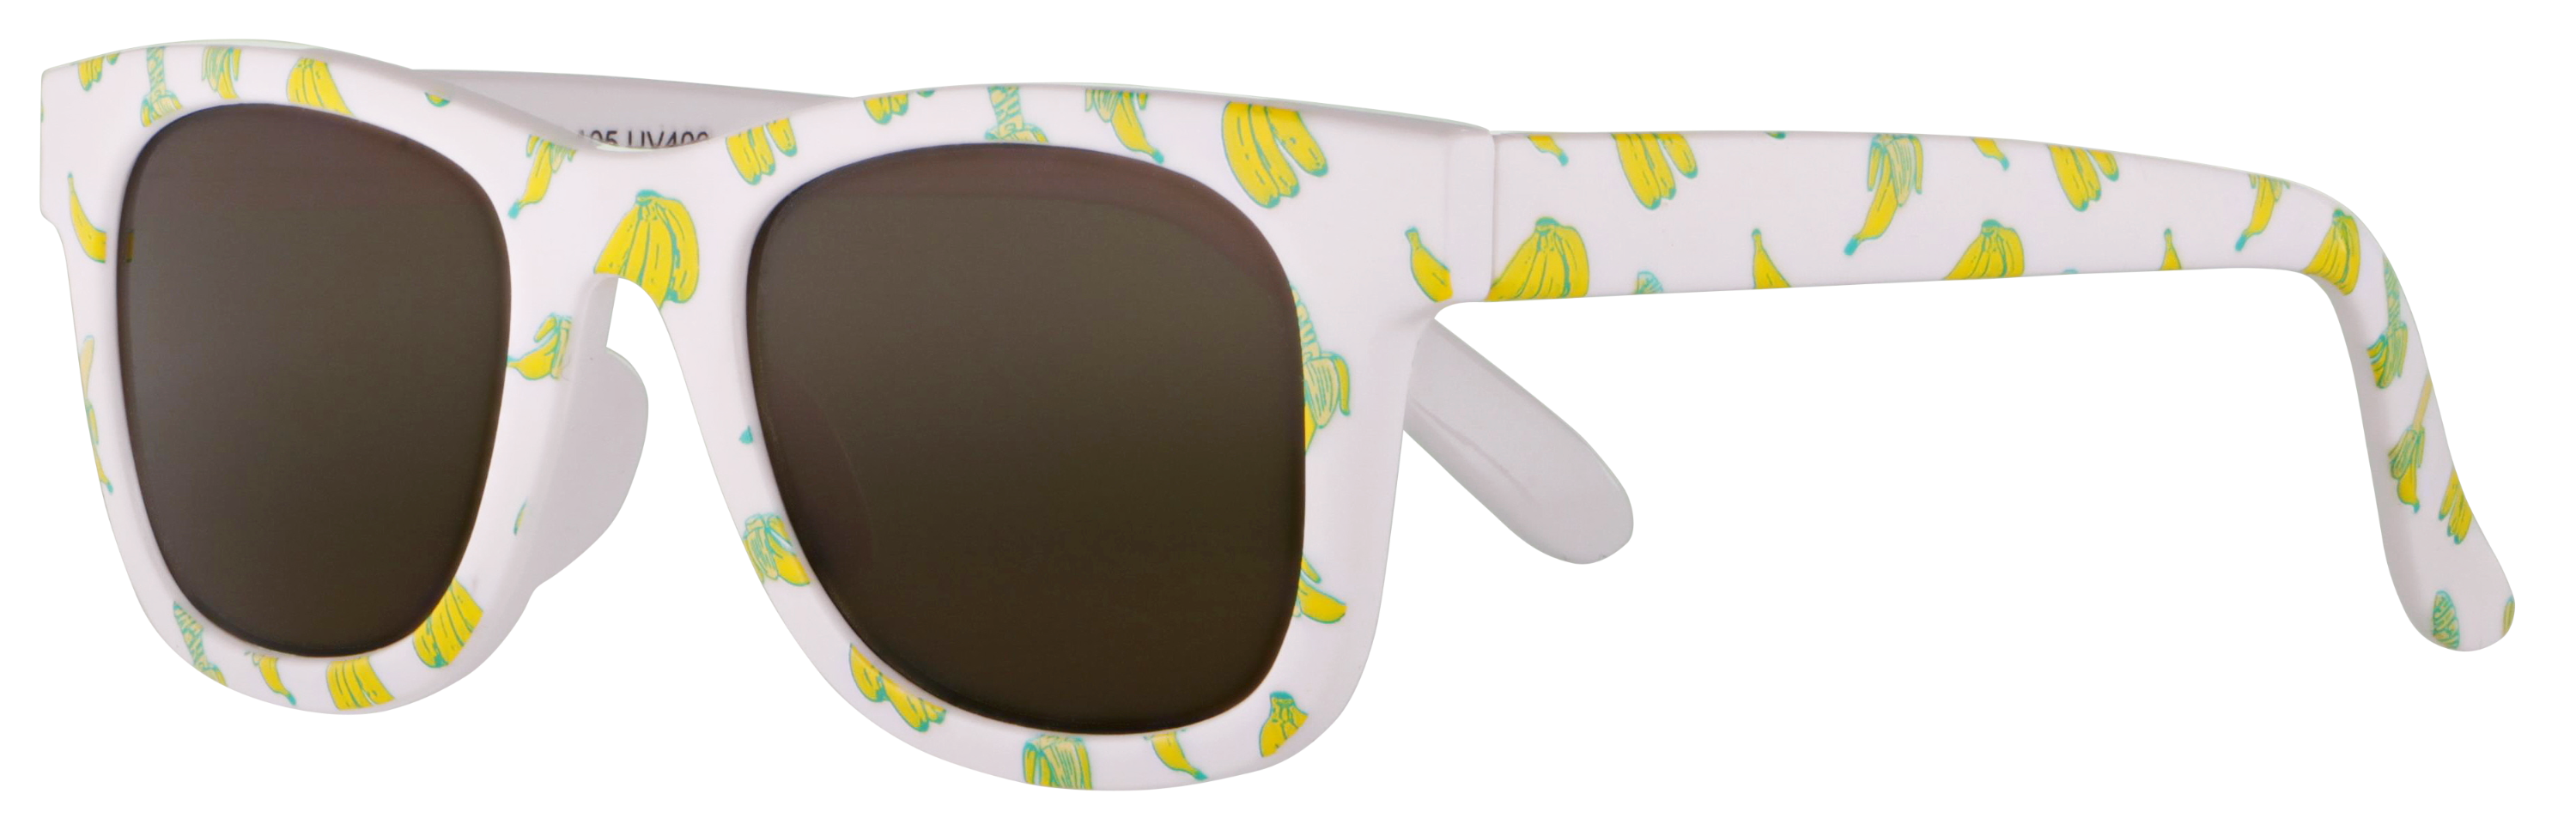 Das Bild zeigt die Sonnenbrille 718802 von der Marke Abele Optik in weiß mit Bananen.